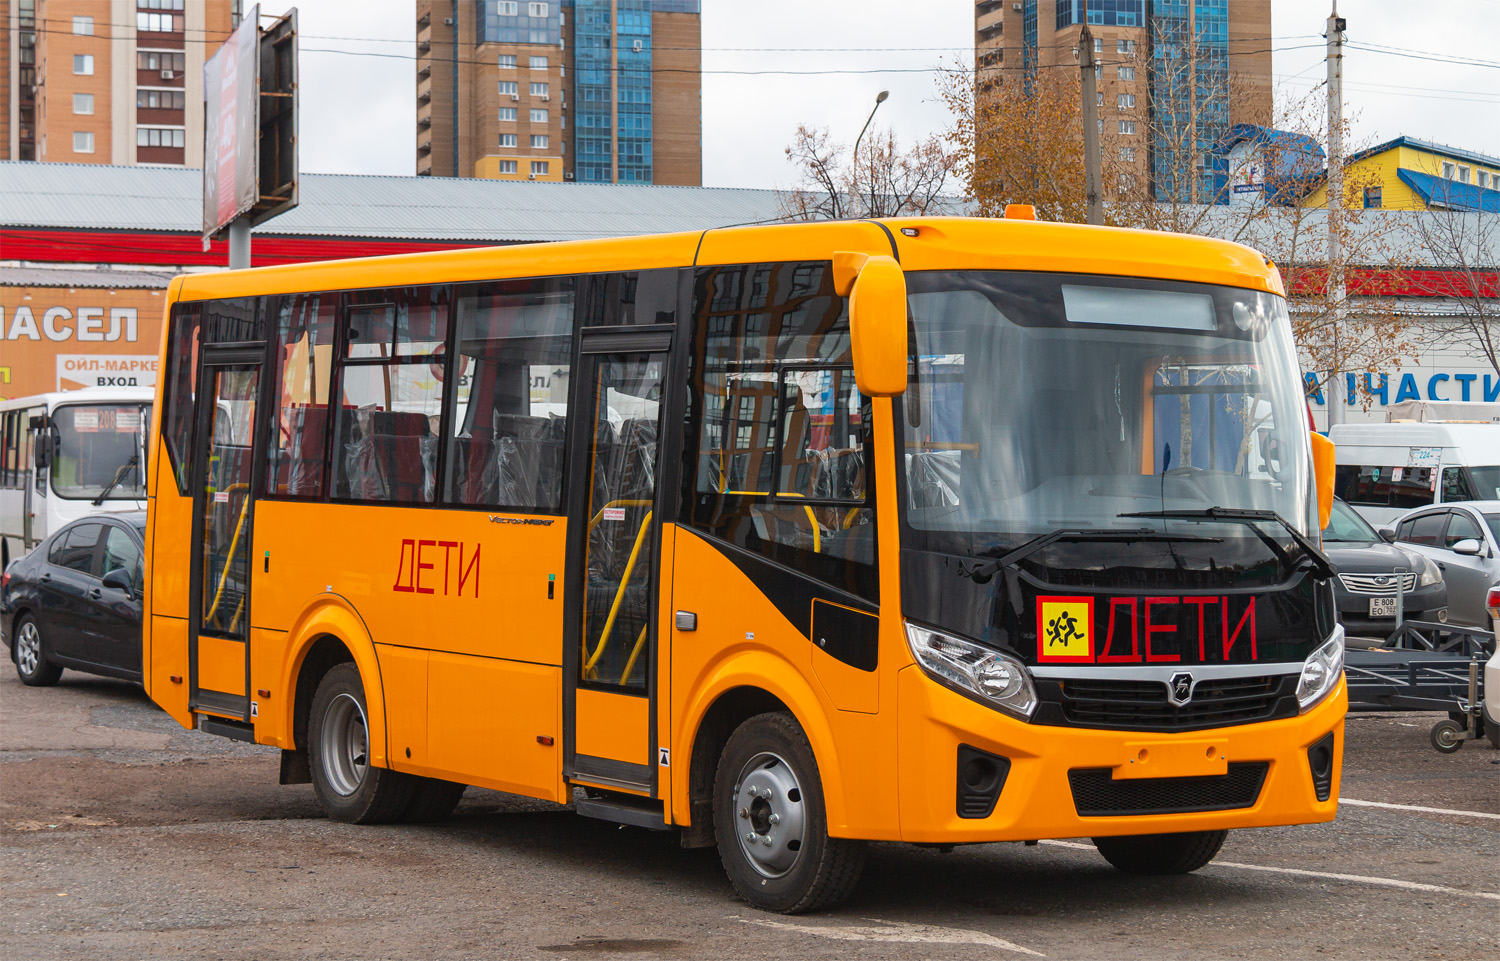 Baszkortostan — New bus